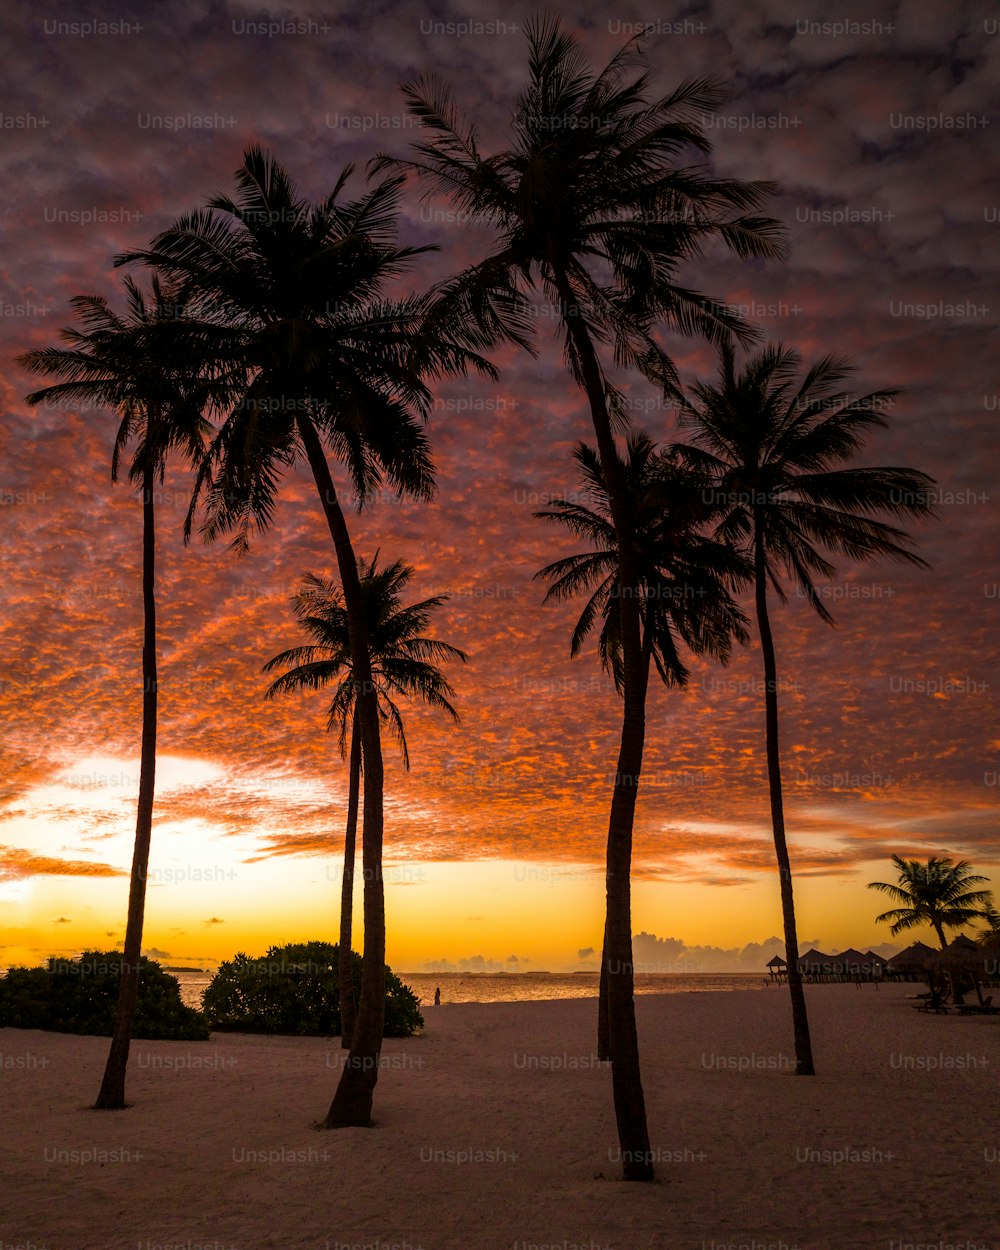 Tres palmeras en una playa con una puesta de sol al fondo